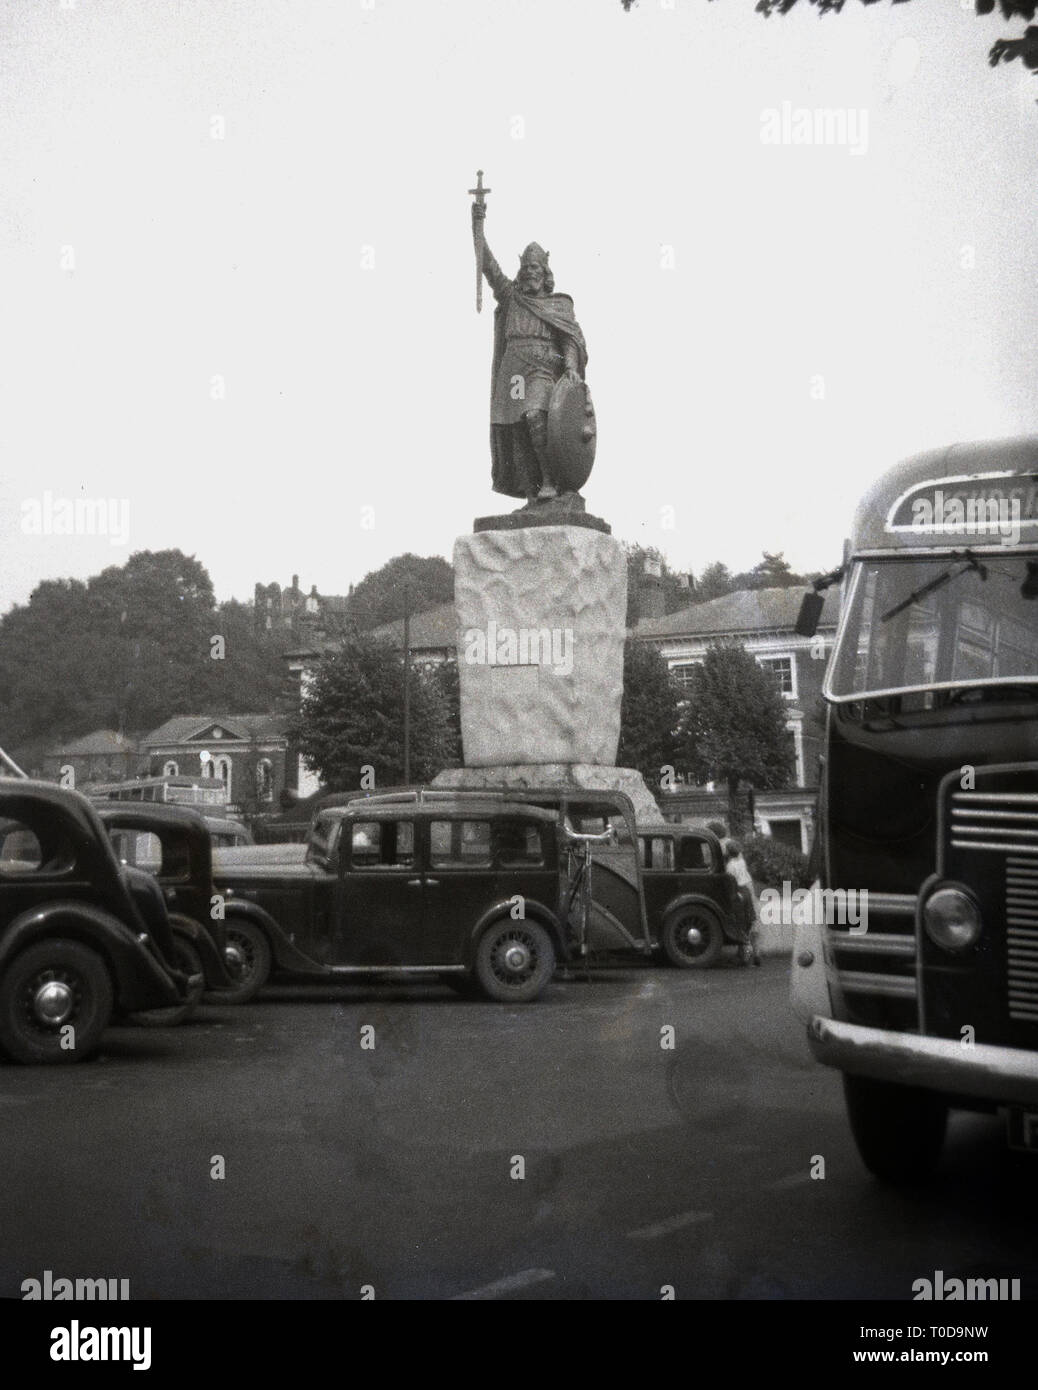 1940, Autos der Epoche um die Statue von Alfred dem Großen, dem sächsischen König, in Winchester, Hampshire, England, UK geparkt. Stockfoto